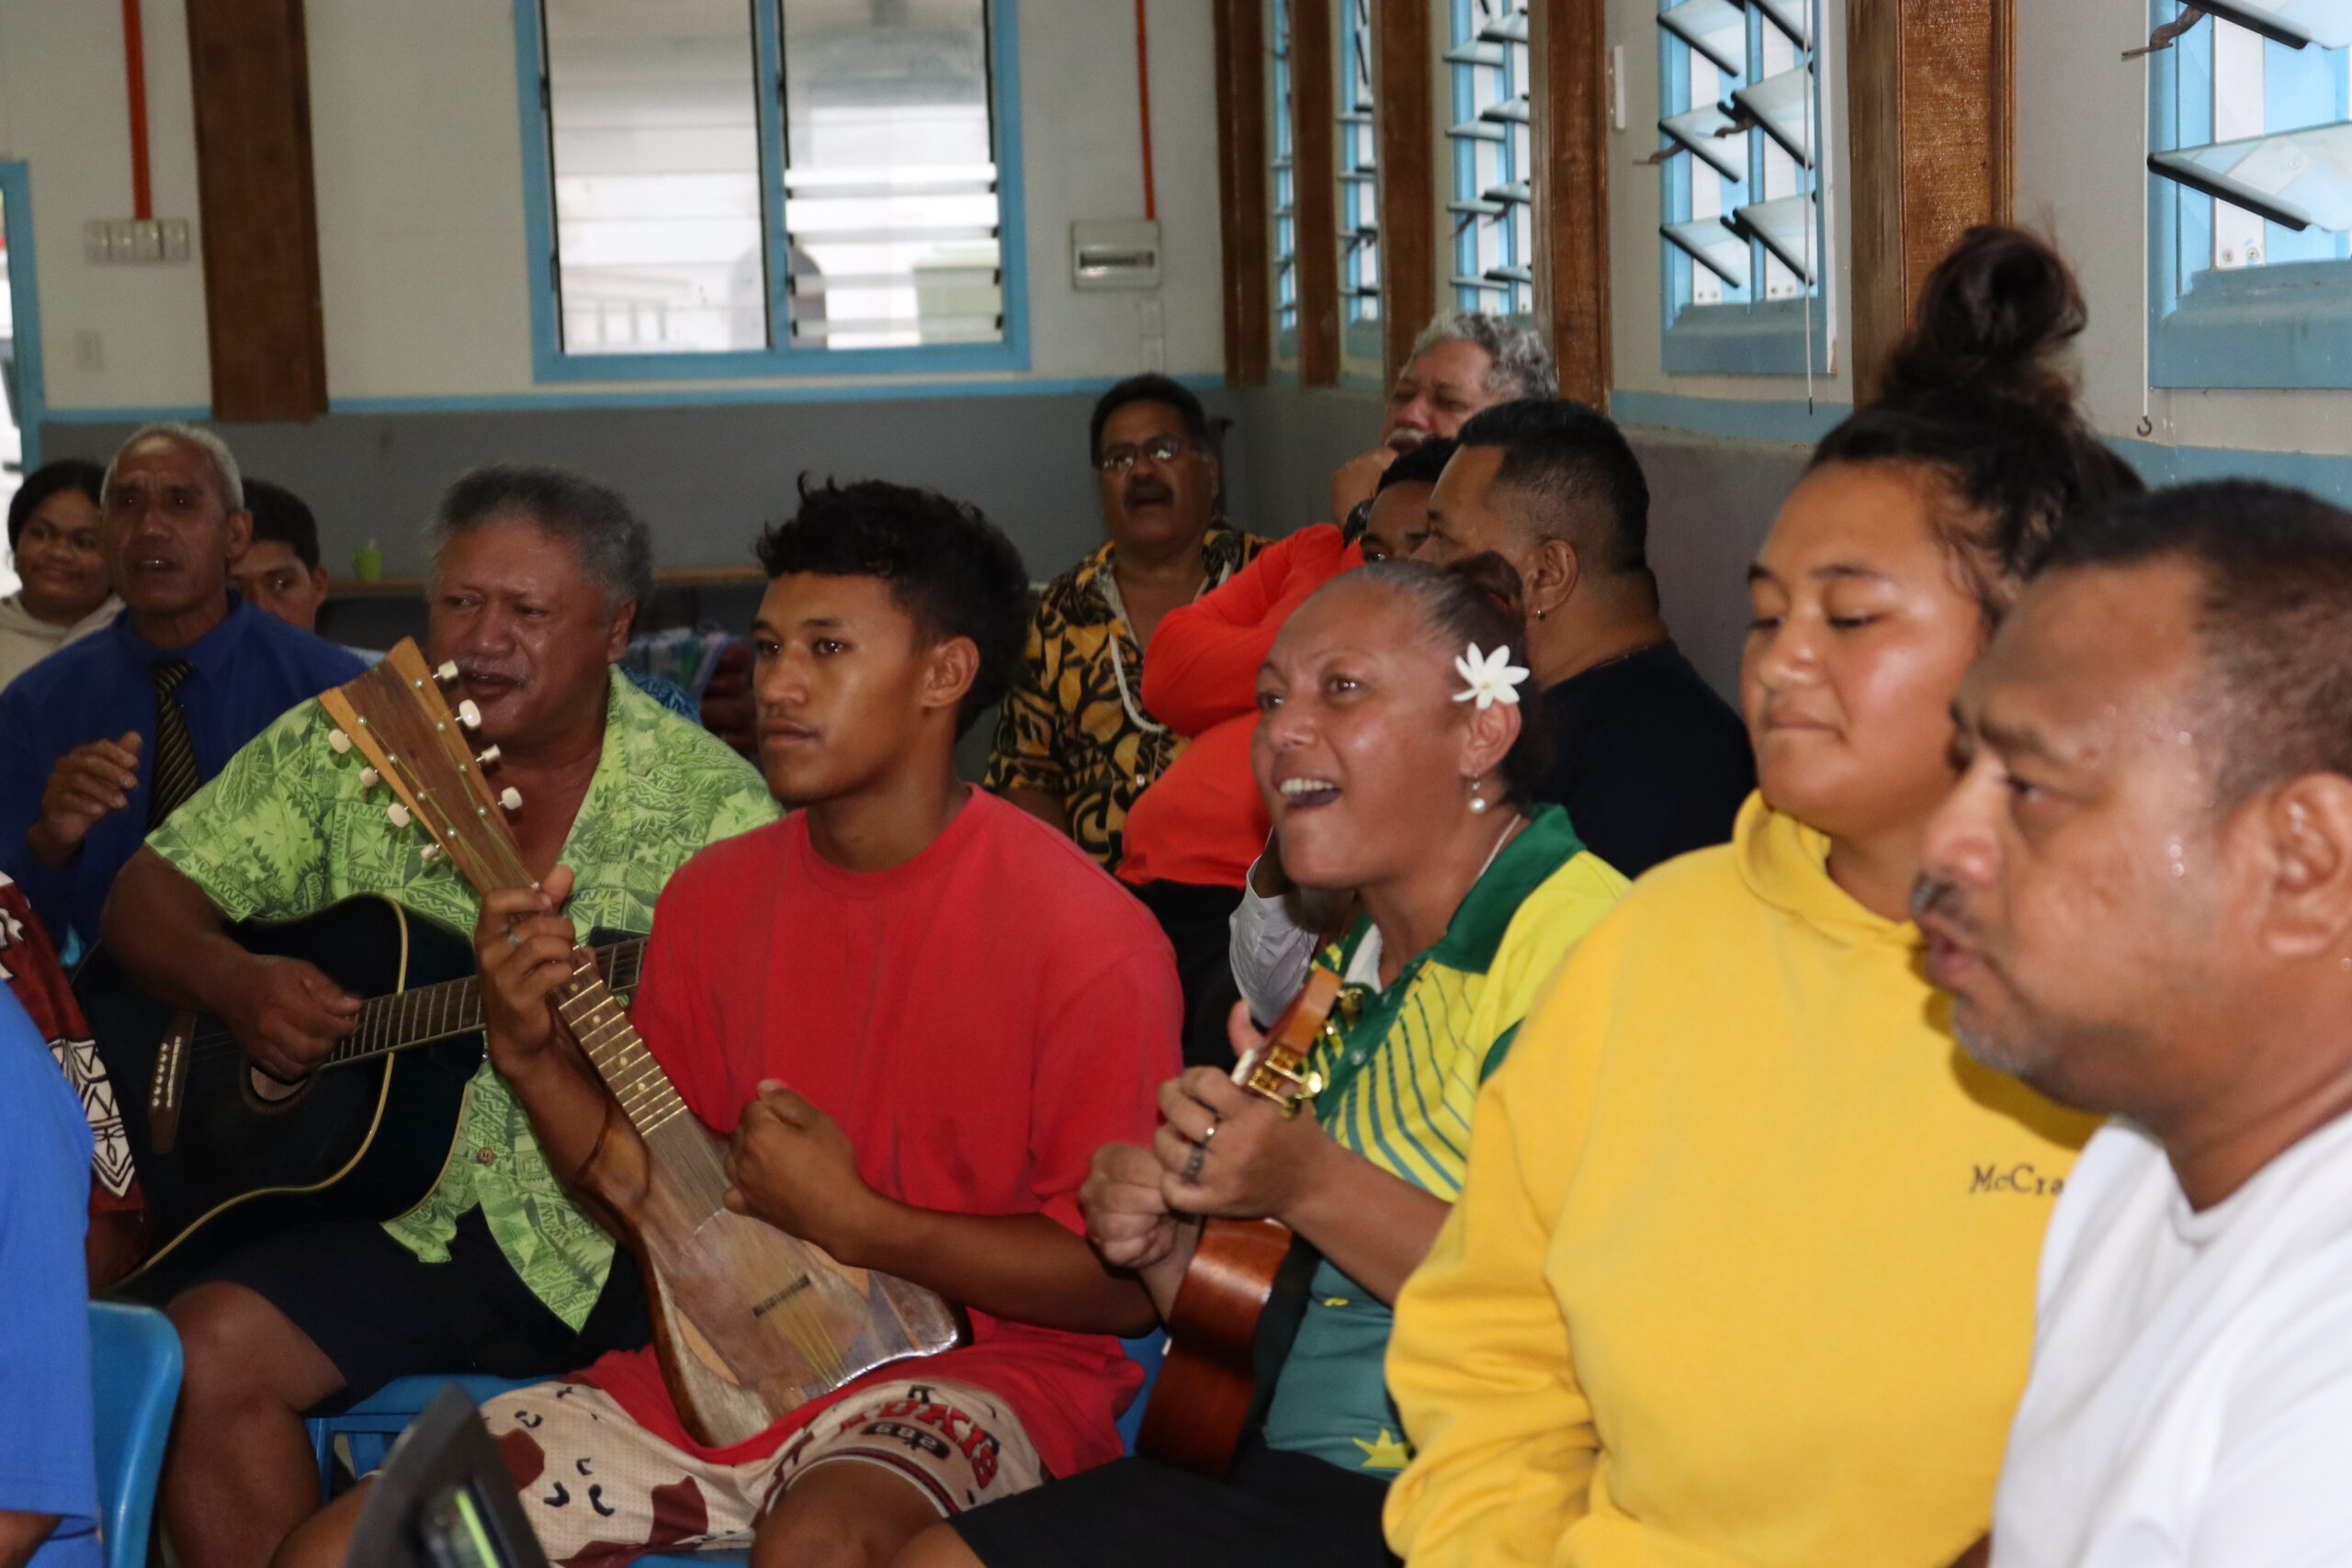 Mangaia 200 years of Gospel celebrations embraces island